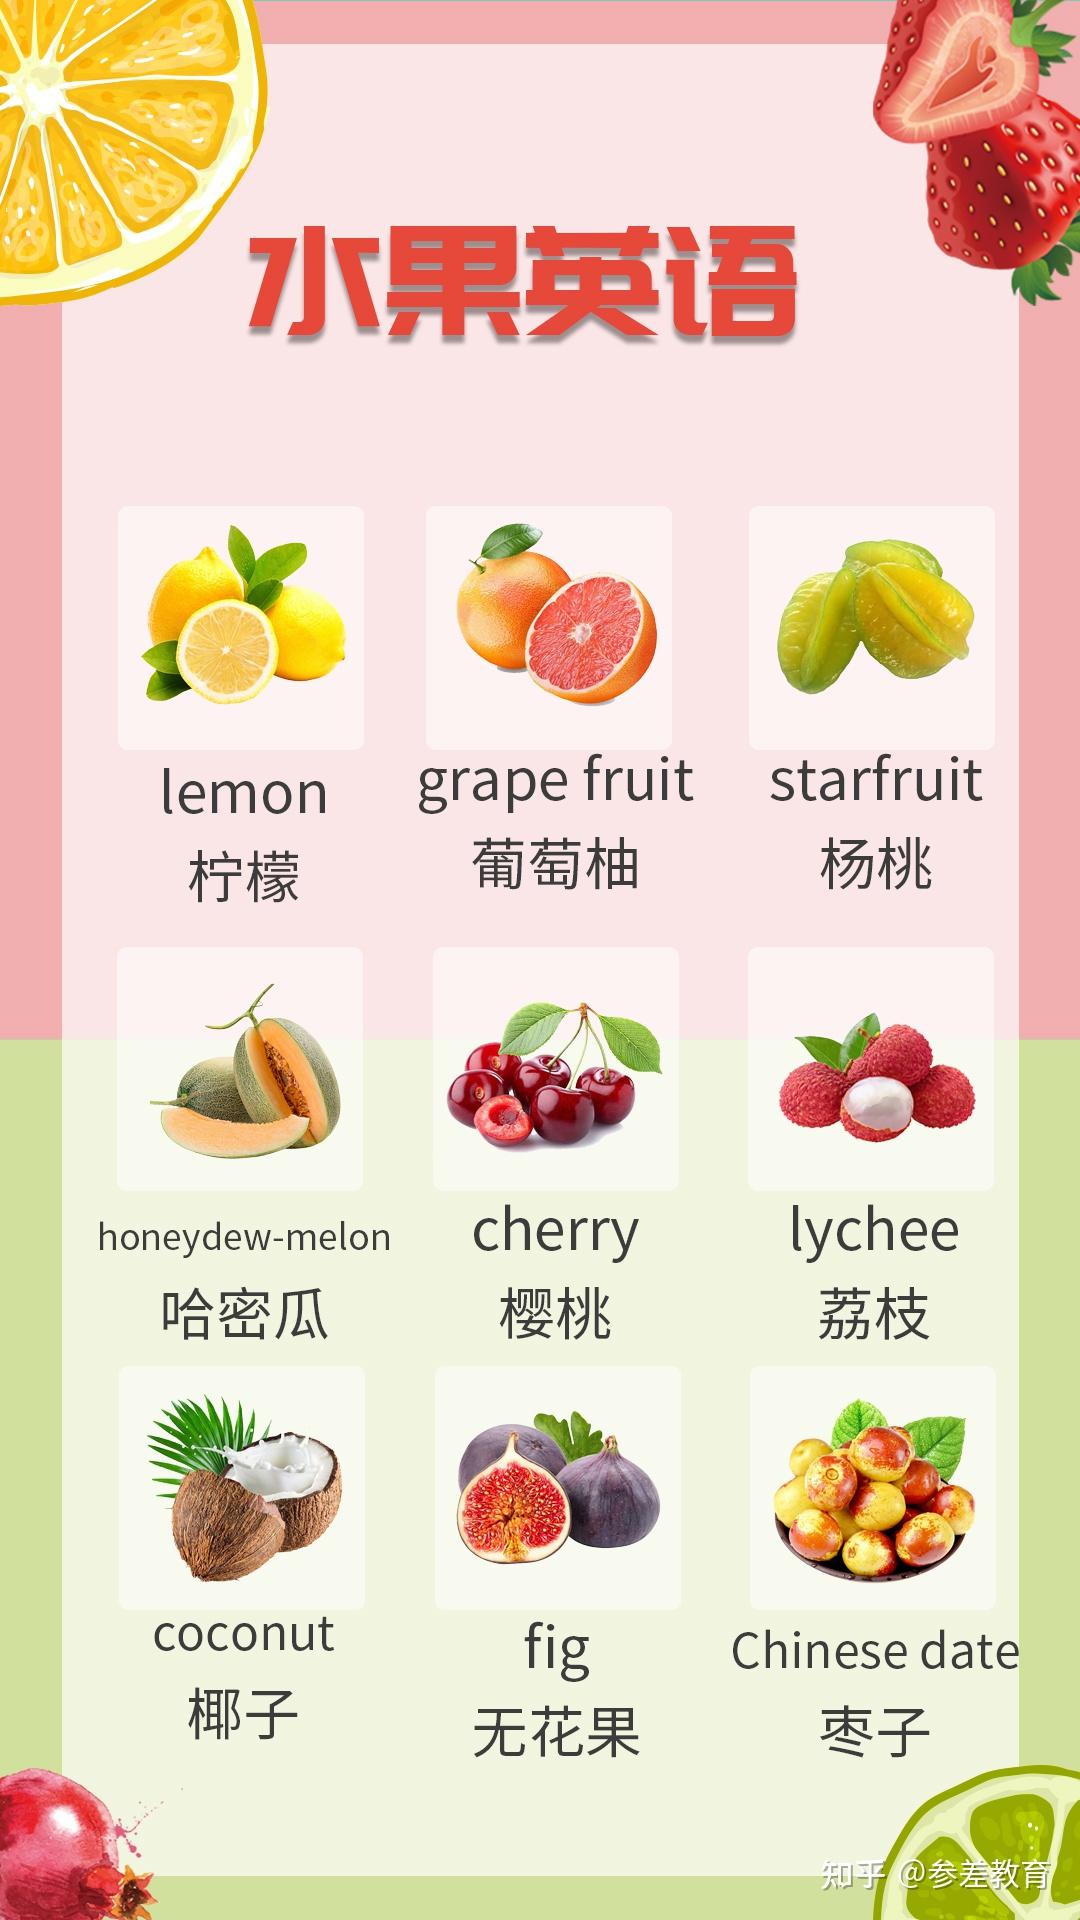 白色背景中突显的一组泰国水果 库存照片. 图片 包括有 成份, 快餐, 节食, 健康, 原始, 橙色, 设置 - 158211452